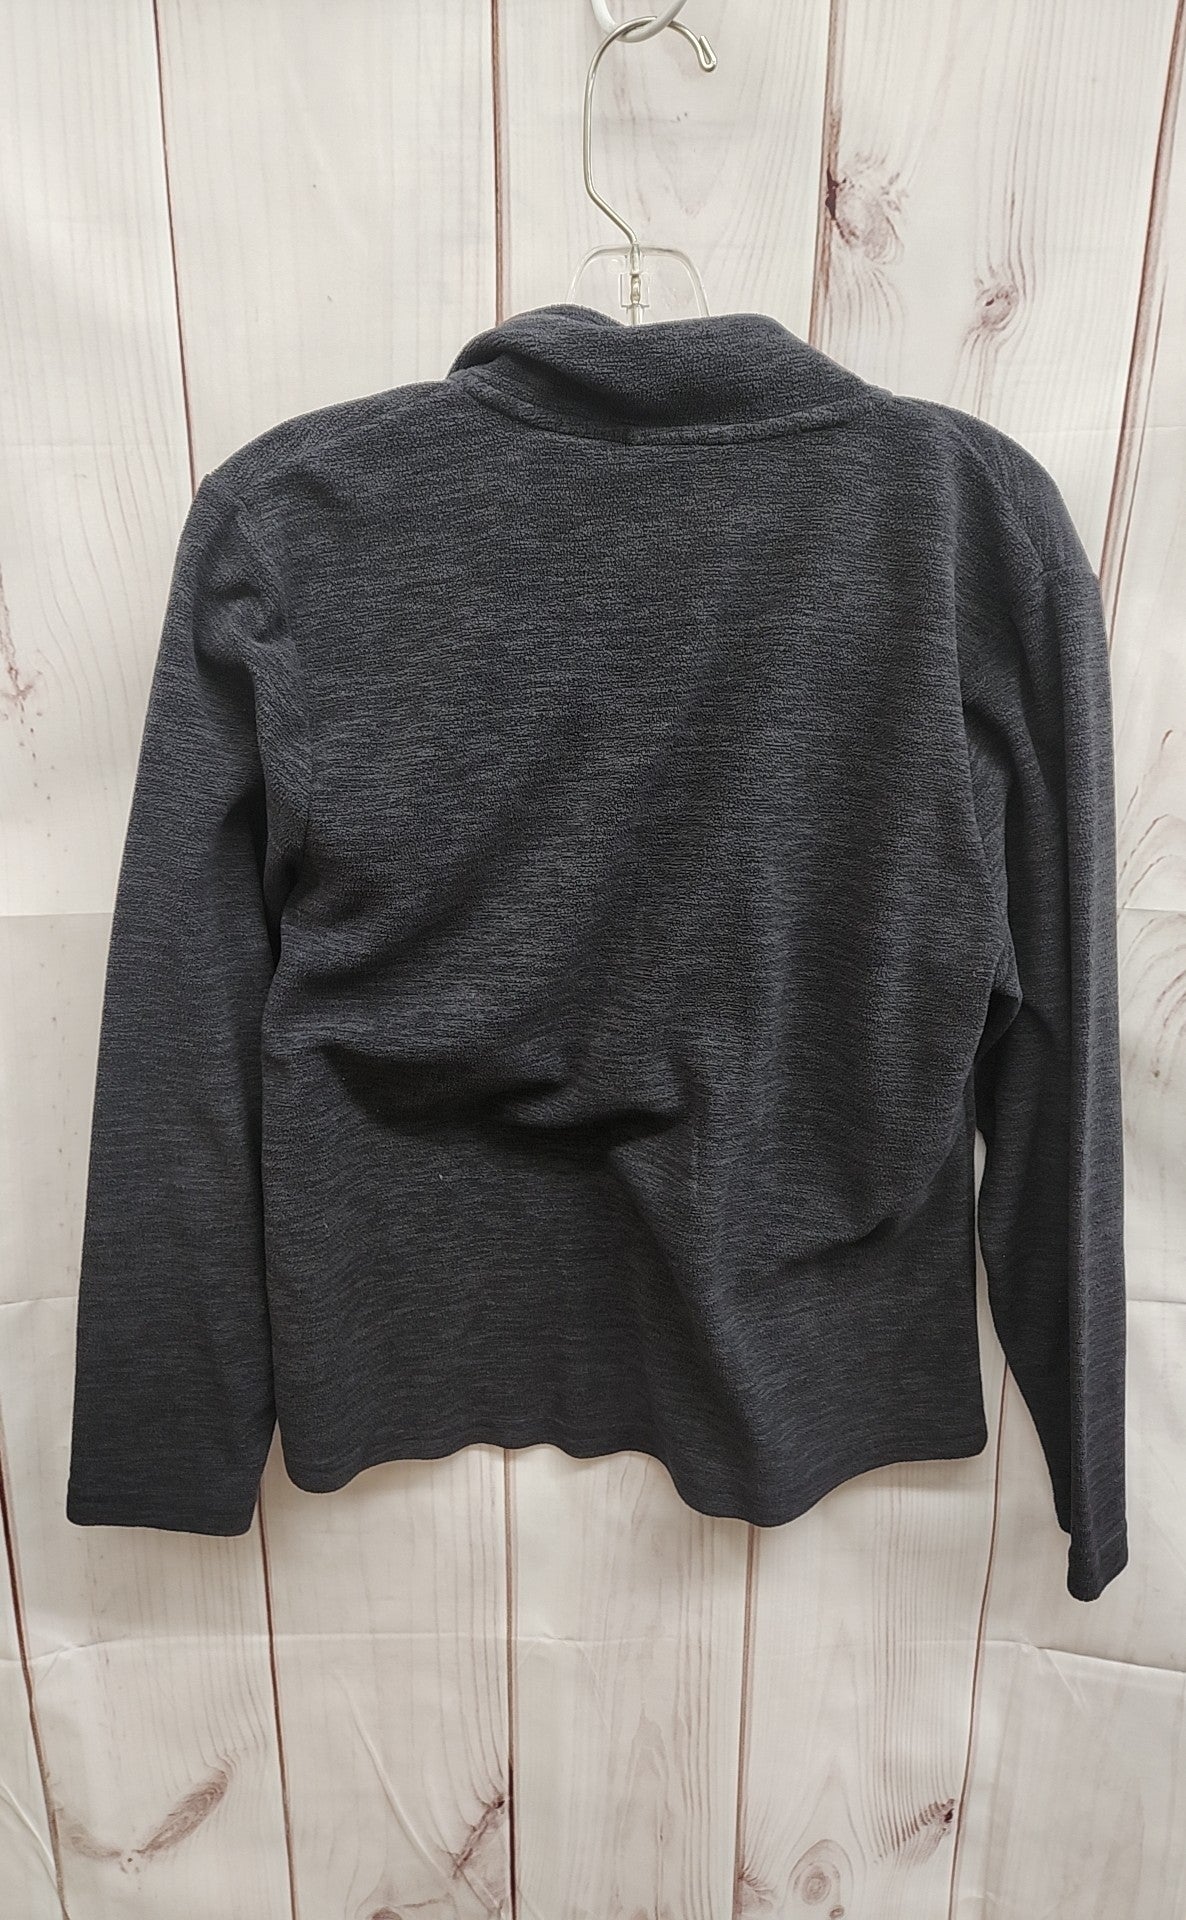 Men's Size S Gray Sweatshirt